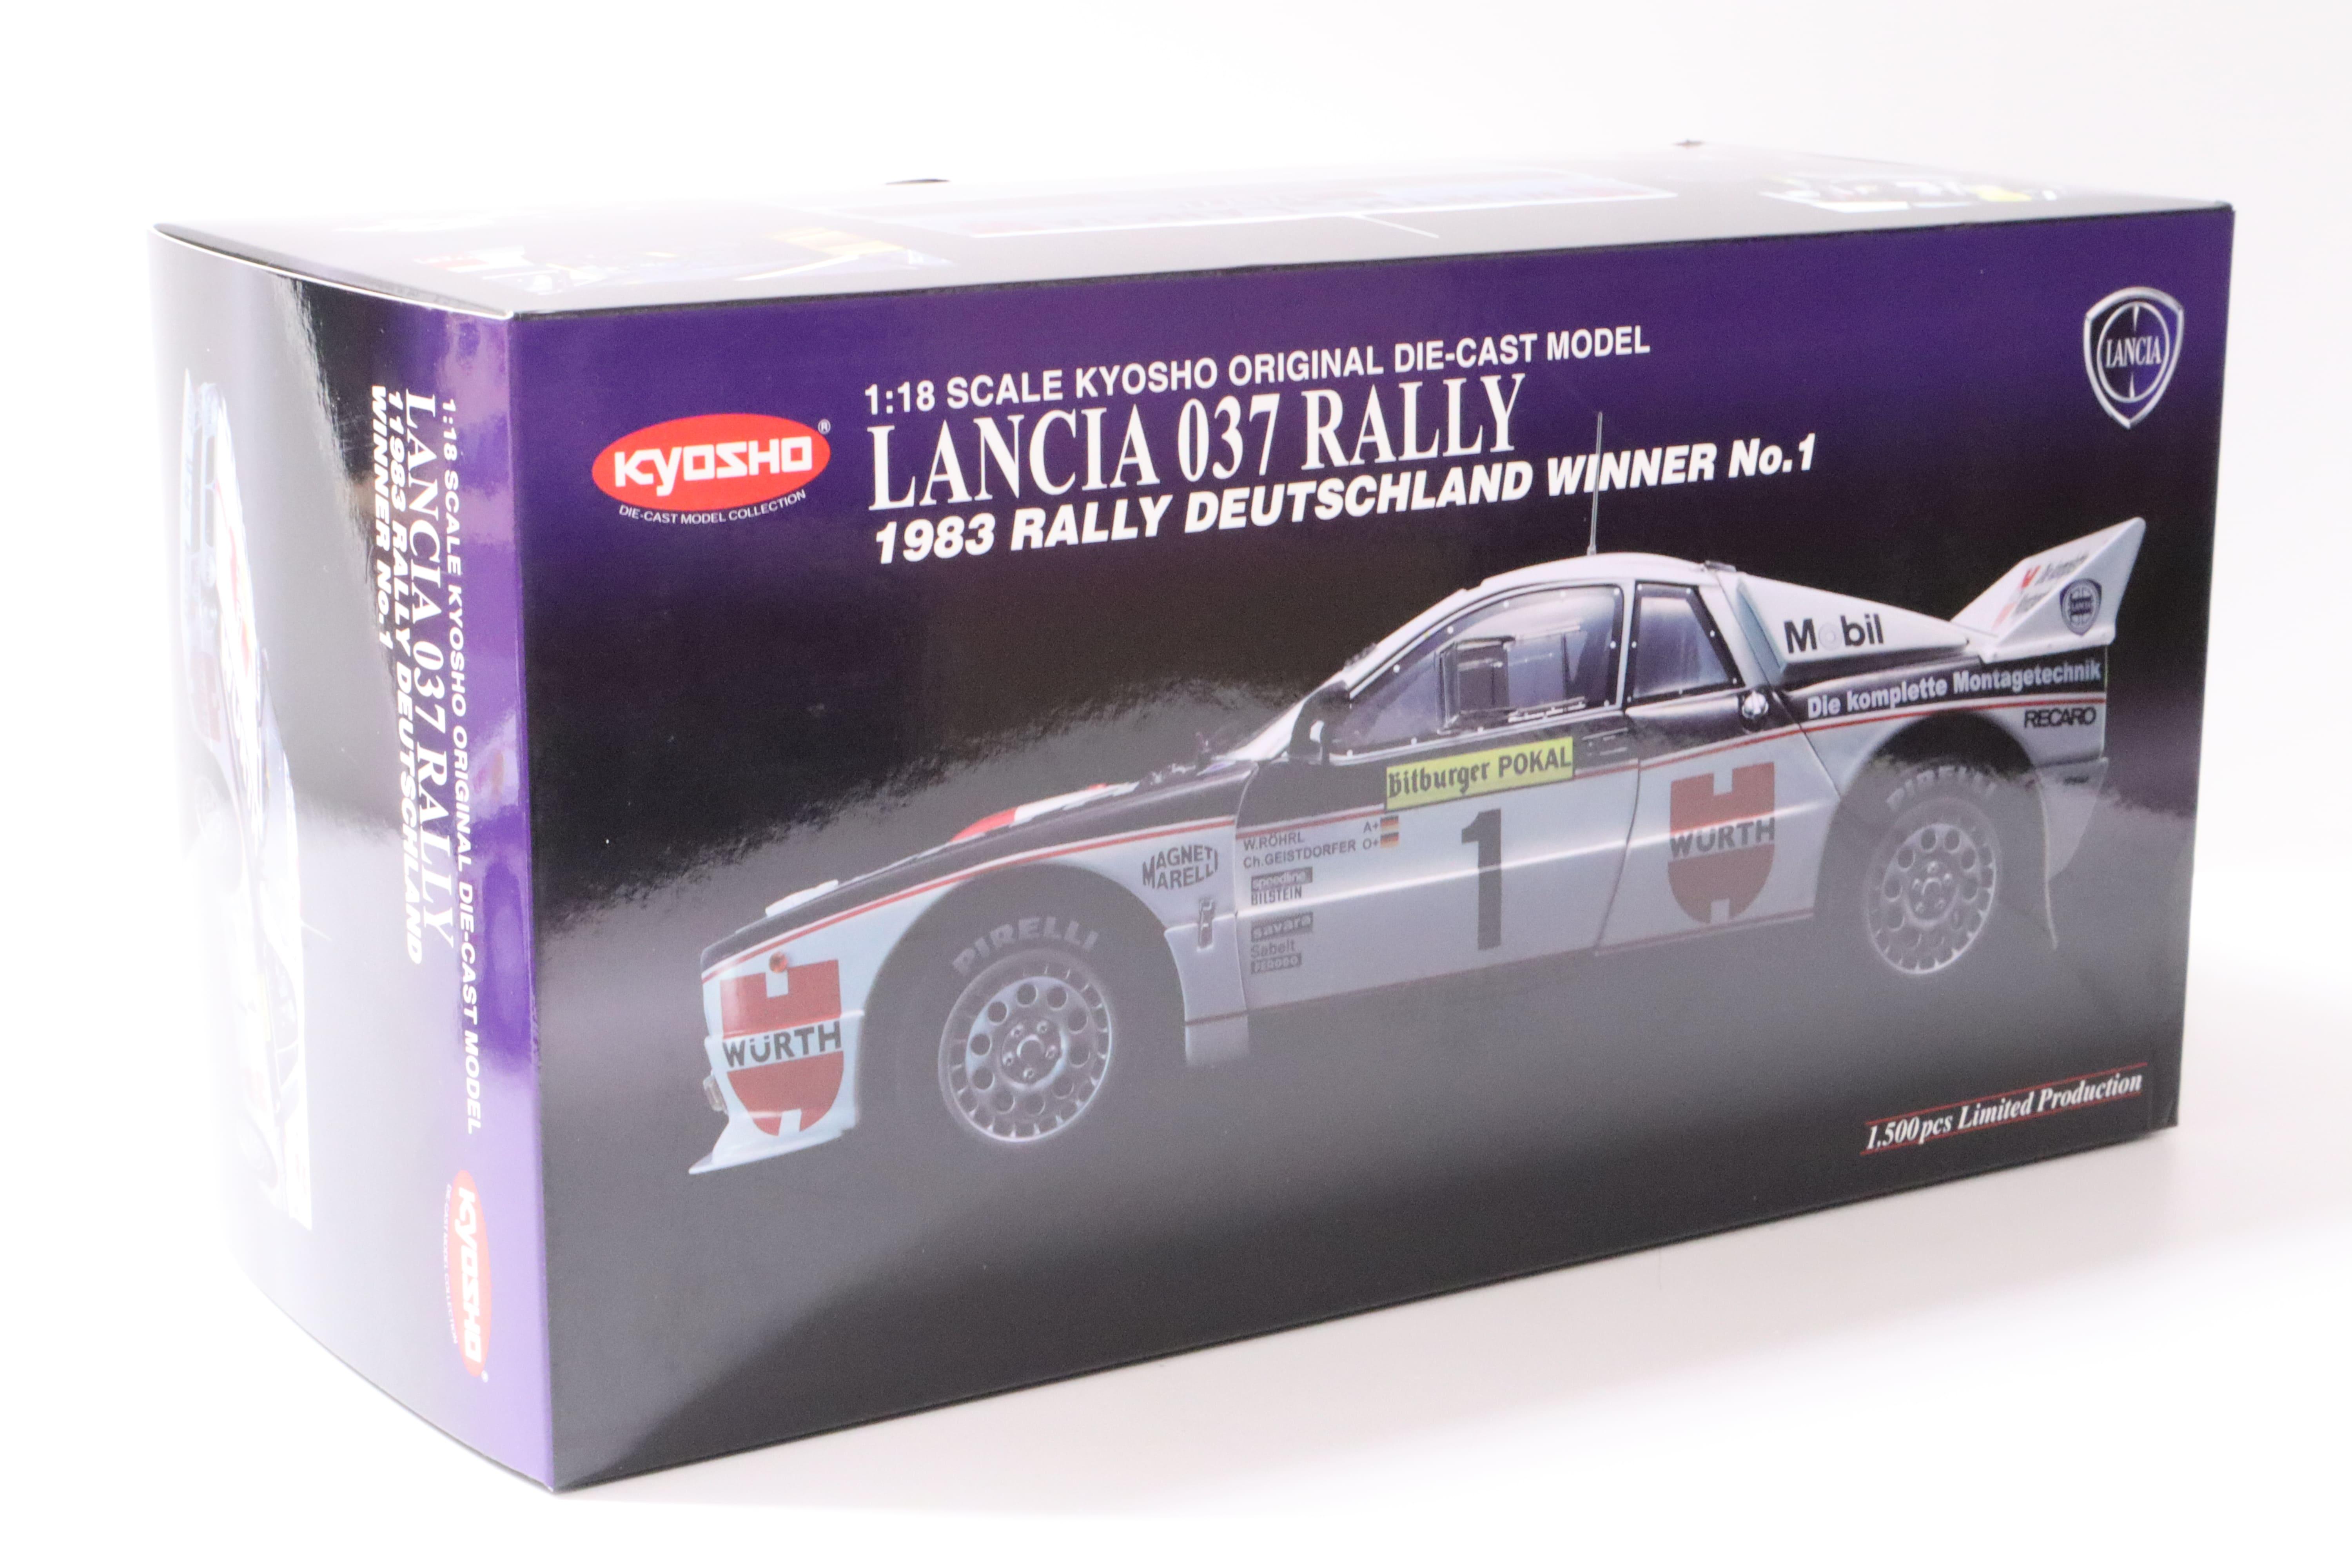 1:18 Kyosho Lancia 037 Rally Deutschland Winner #1 WÜRTH